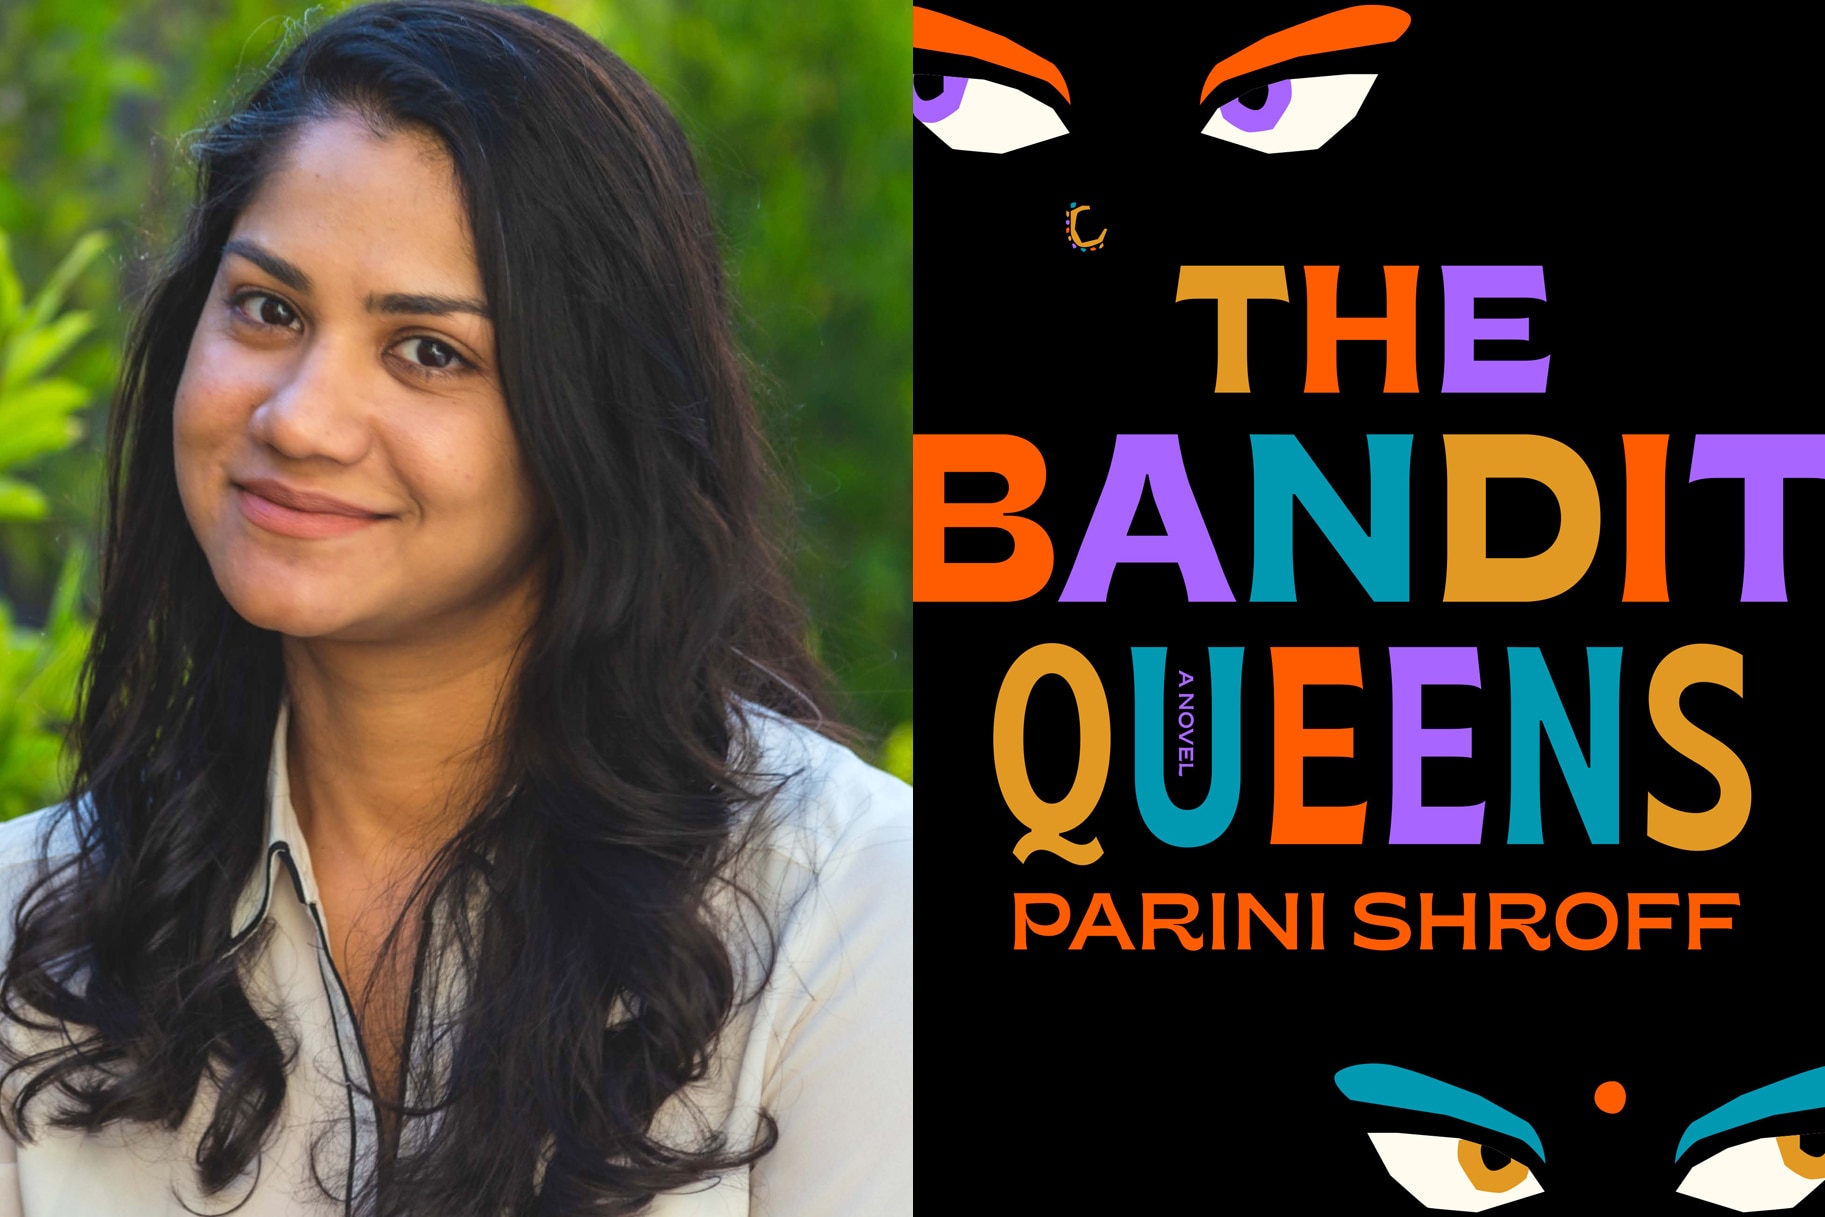 Parini Shroff and The Banditt Queens